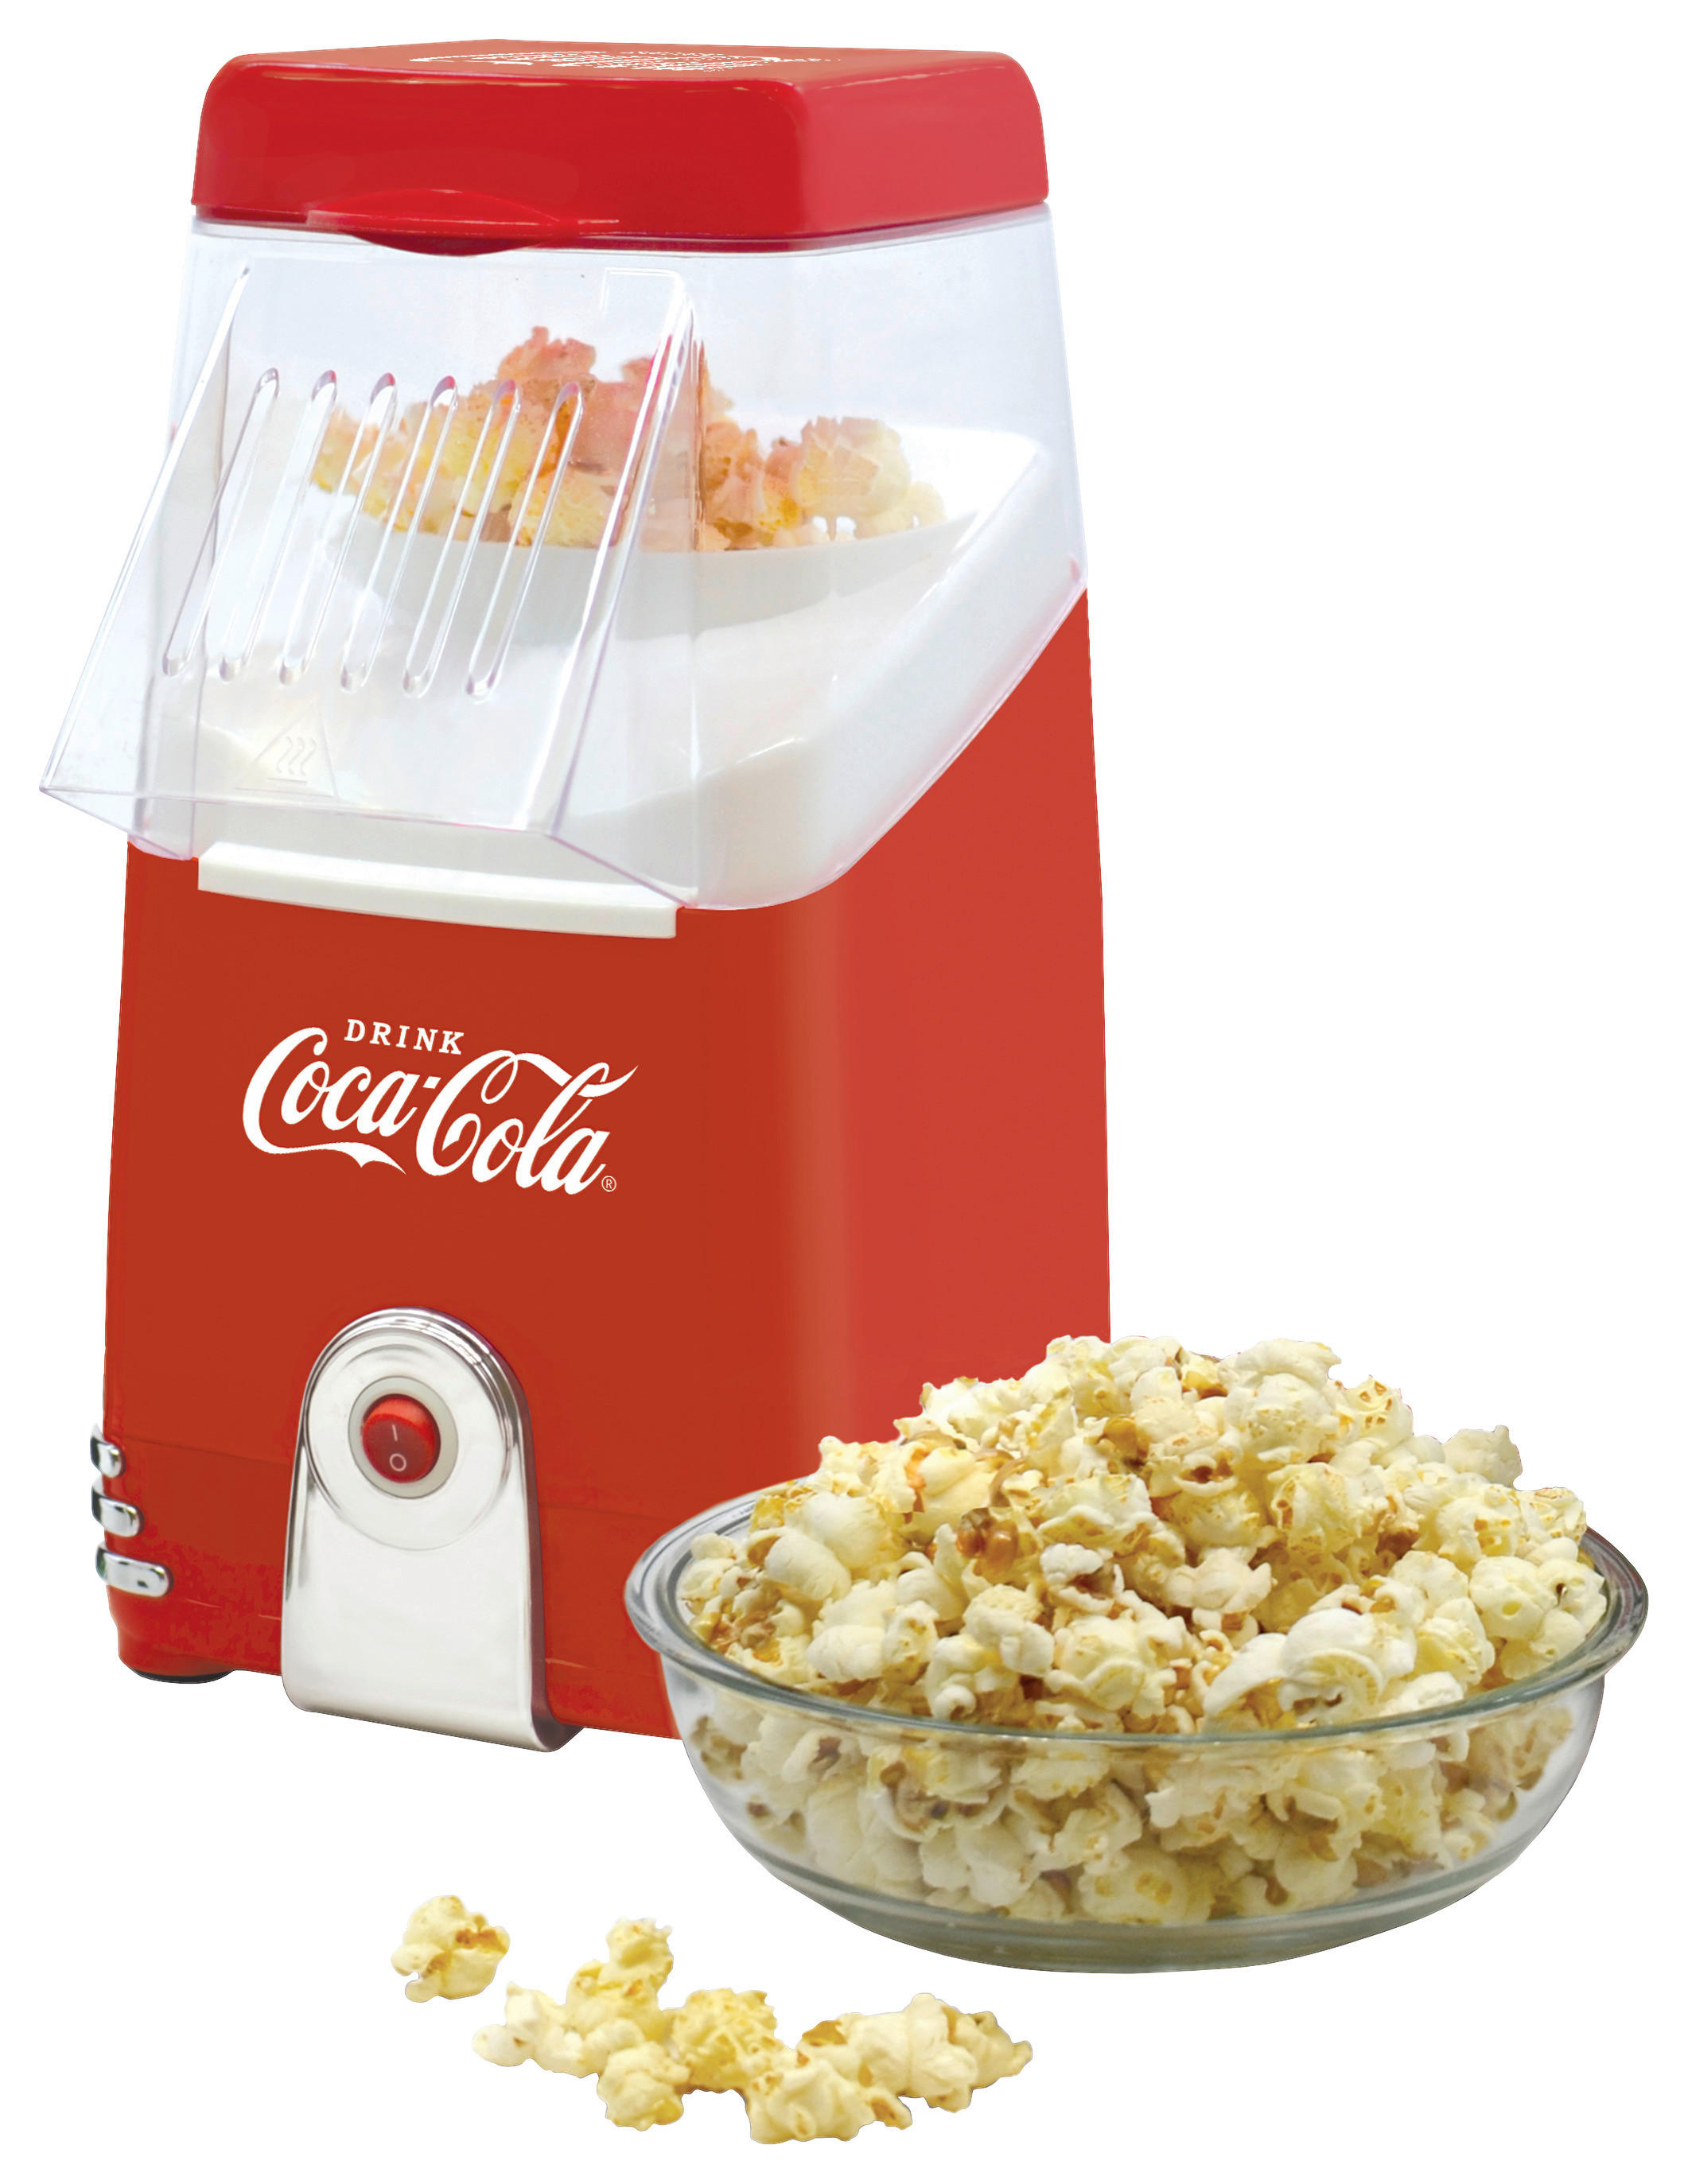 Heißluft-Popcornmaschine Rot entdecken in